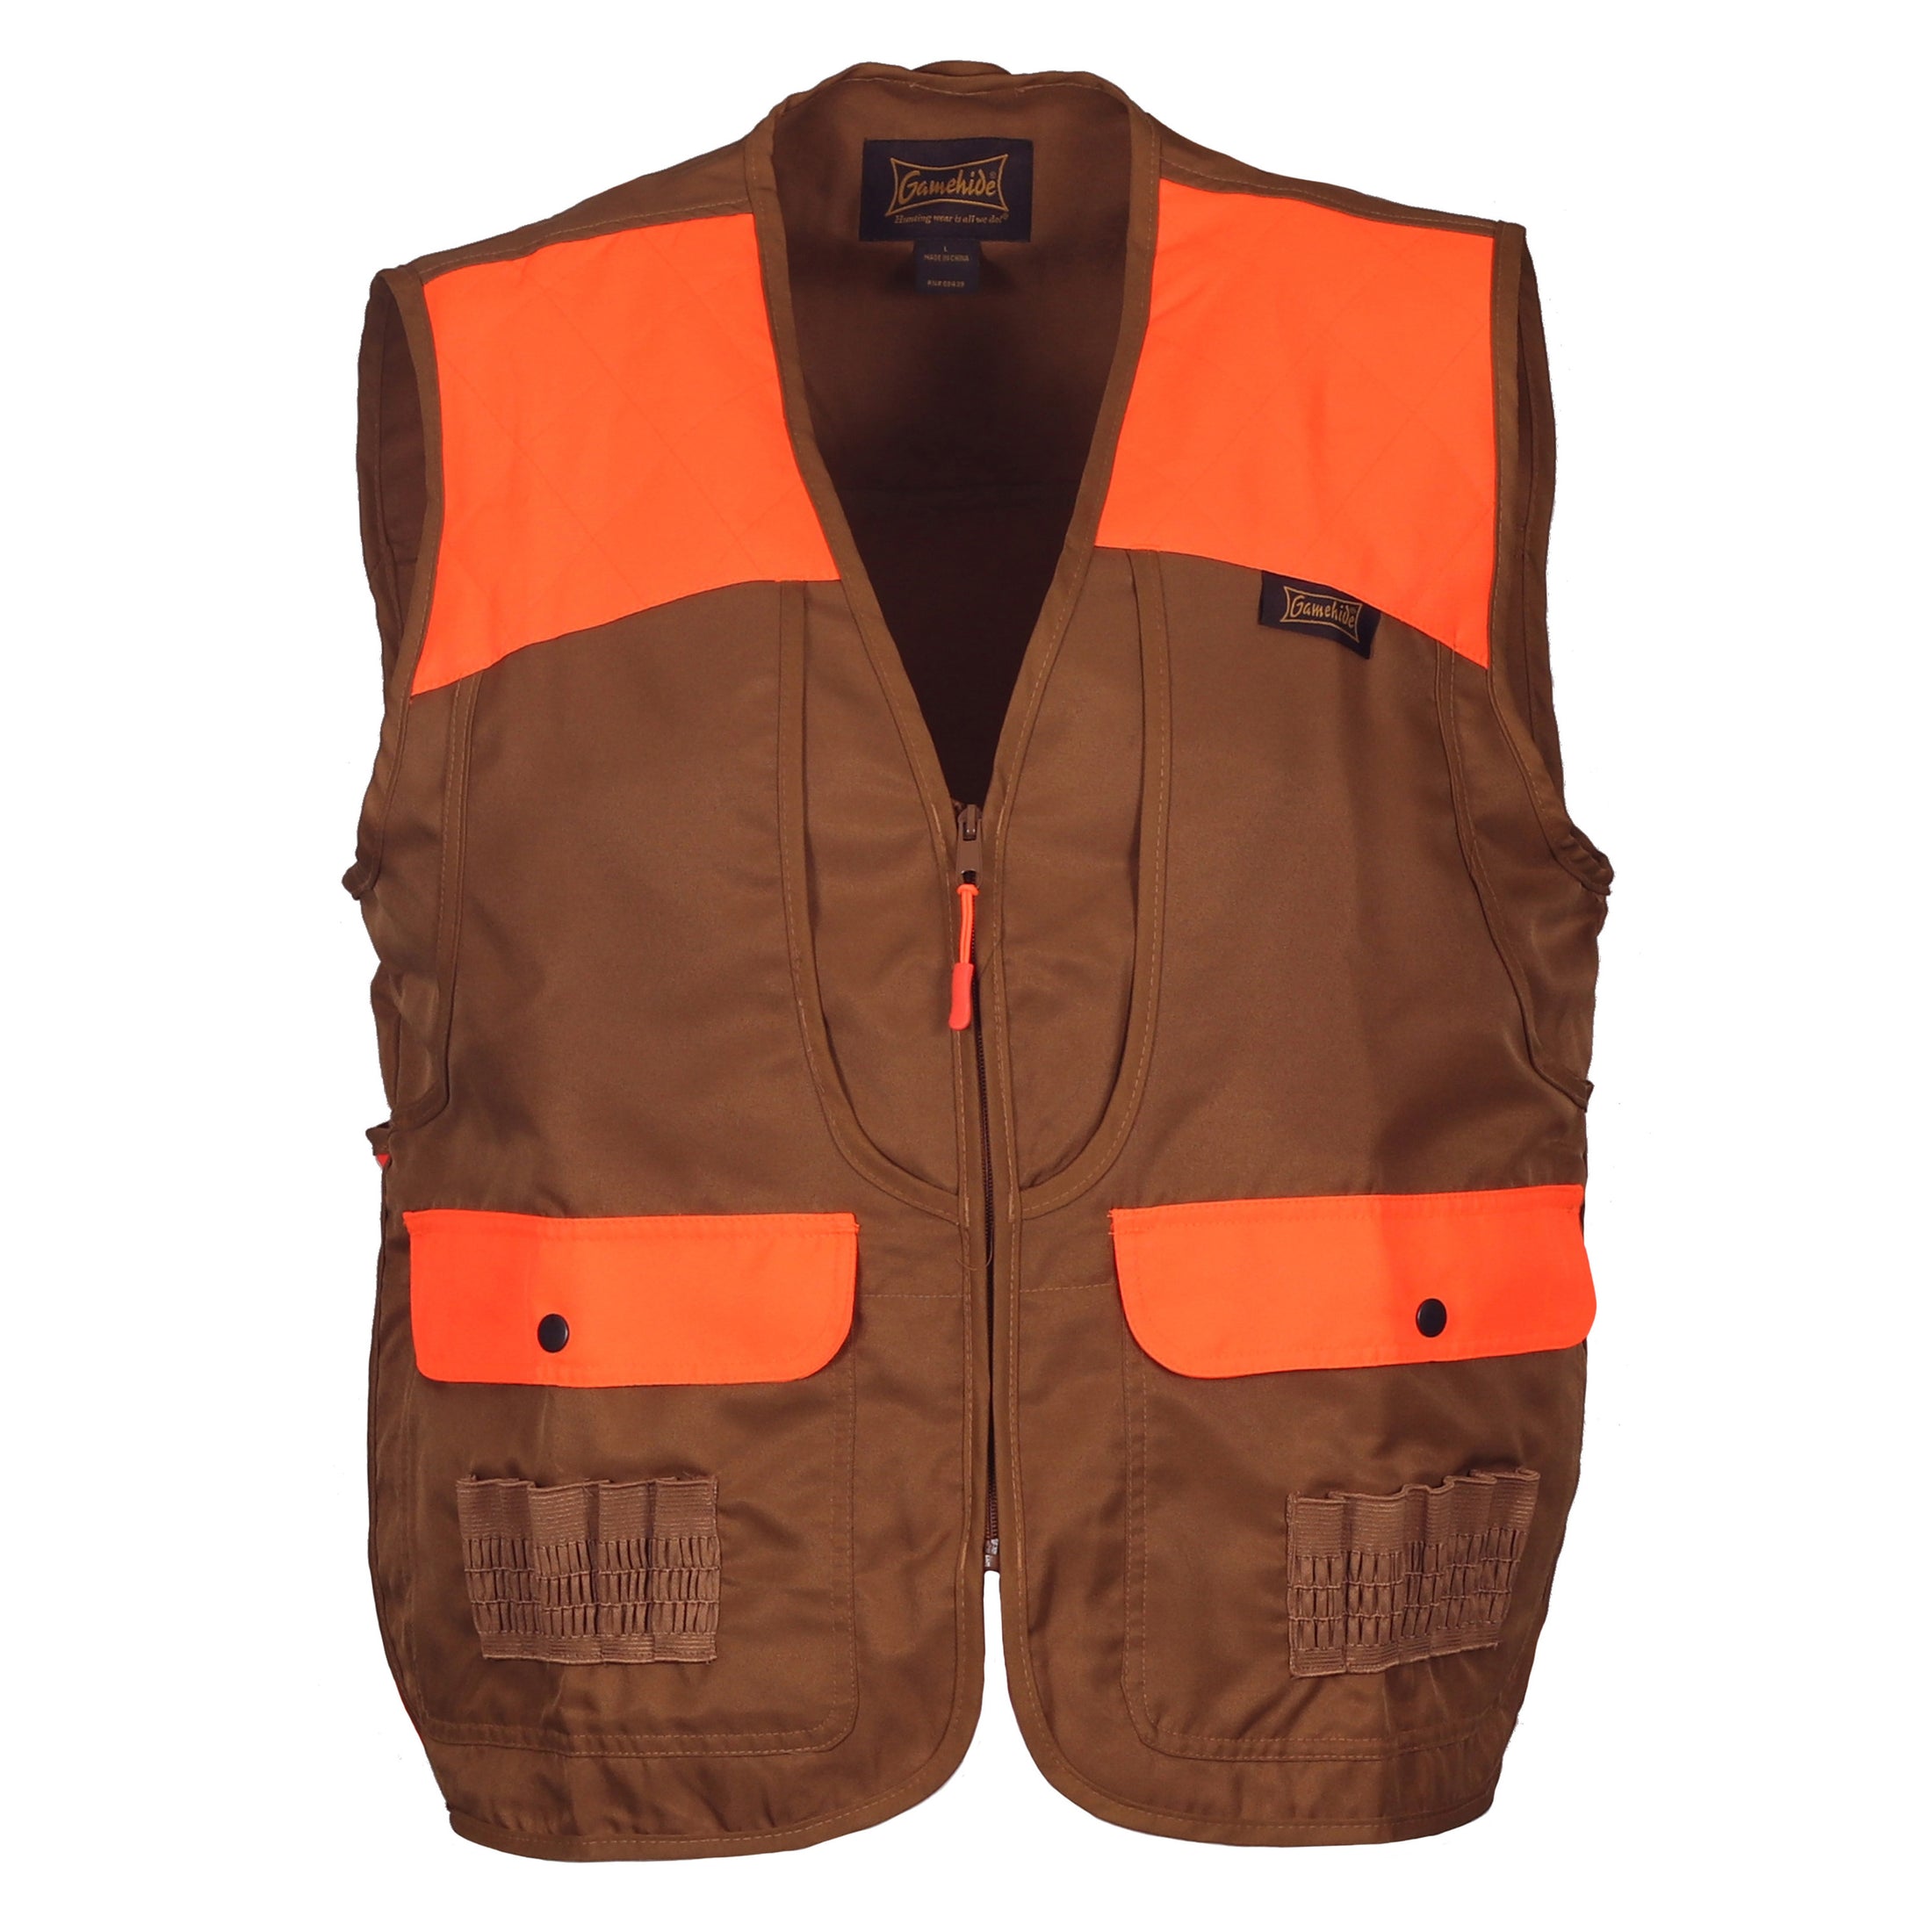 gamehide youth front loader vest front view (marsh brown/orange)